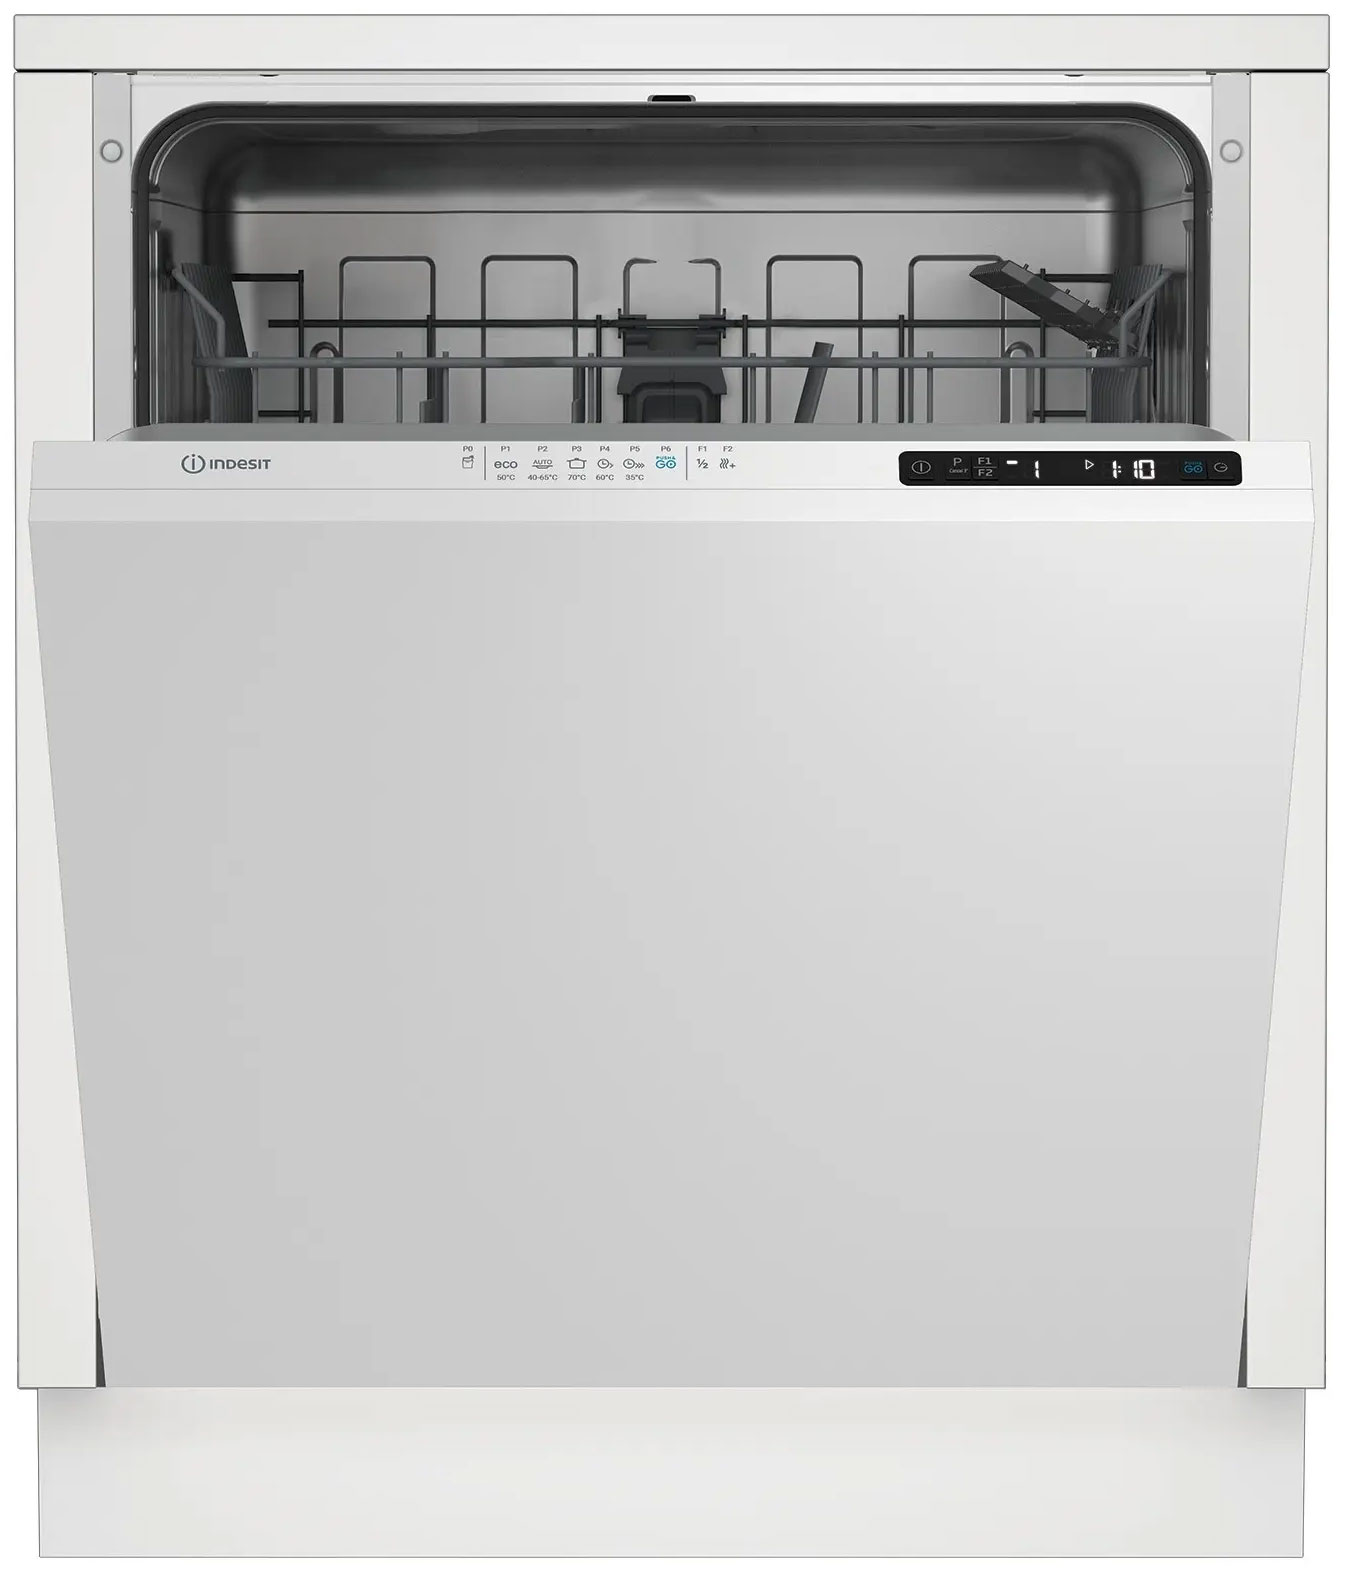 Встраиваемая посудомоечная машина Indesit DI 4C68 AE встраиваемая посудомоечная машина indesit di 4c68 ae